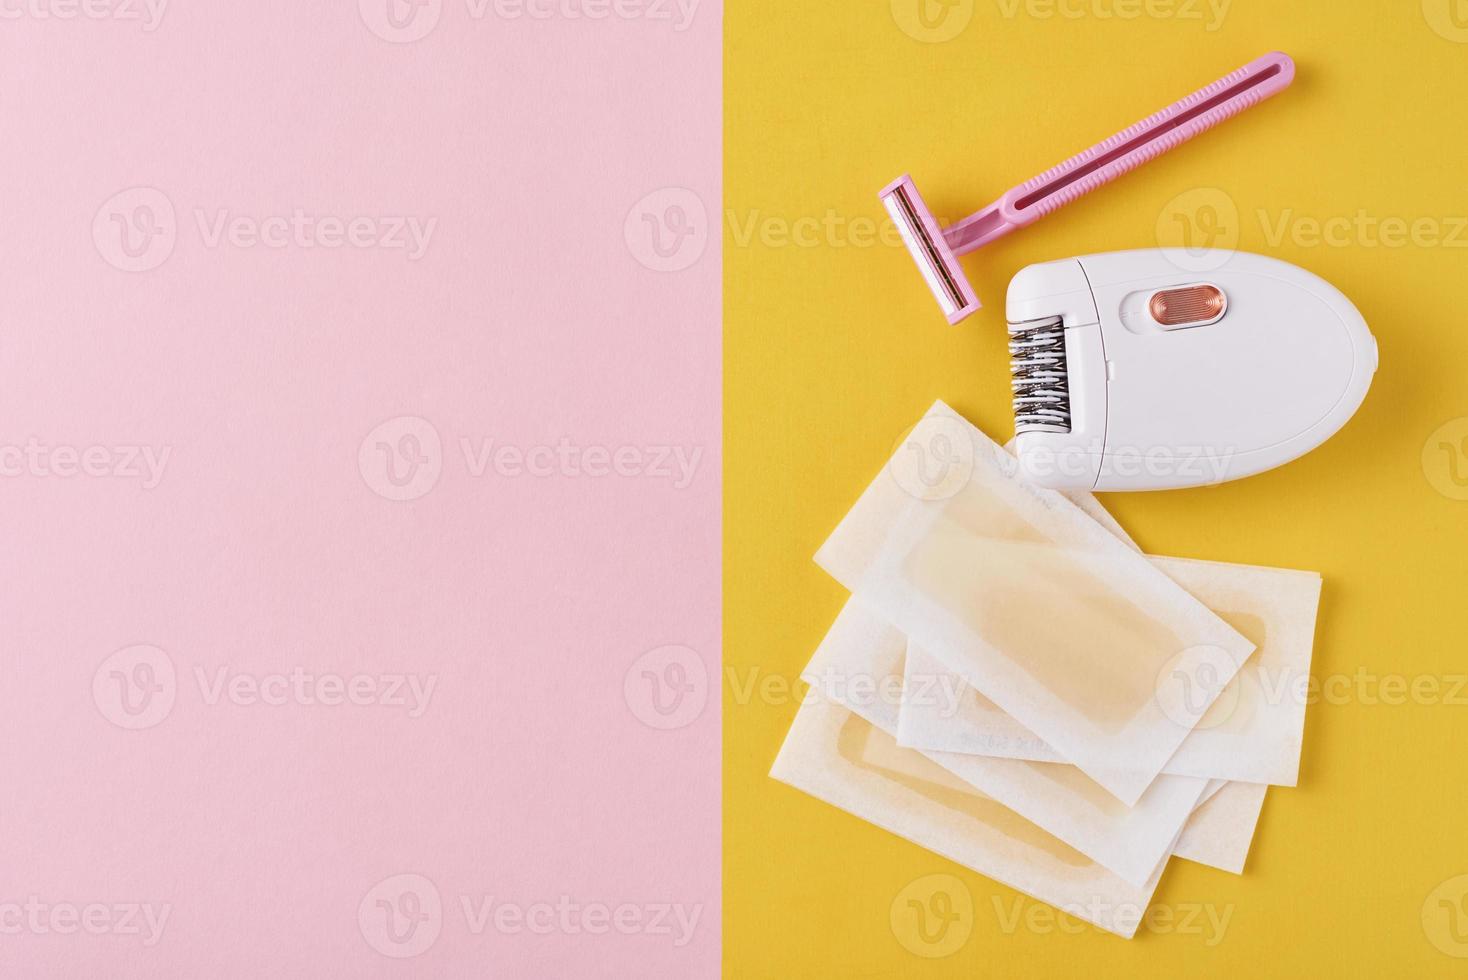 epilatore, rasoio e cera strisce su giallo e rosa foto